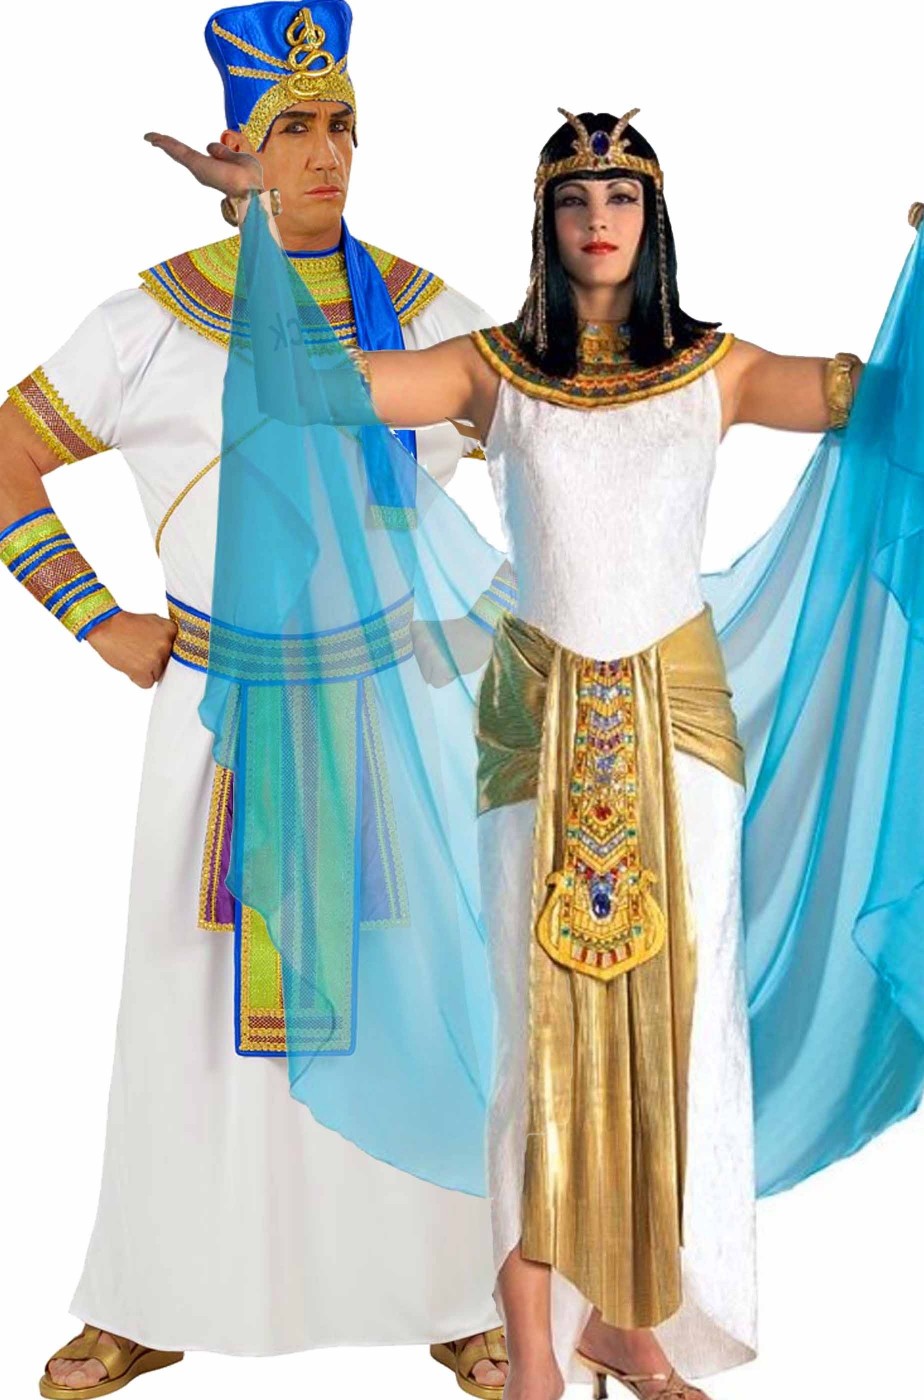 Costume da bambino egiziano Costume egiziano Costume da faraone bambino  Costumi da faraone Costume da bambino egiziano Costume culturale da bambino  -  Italia